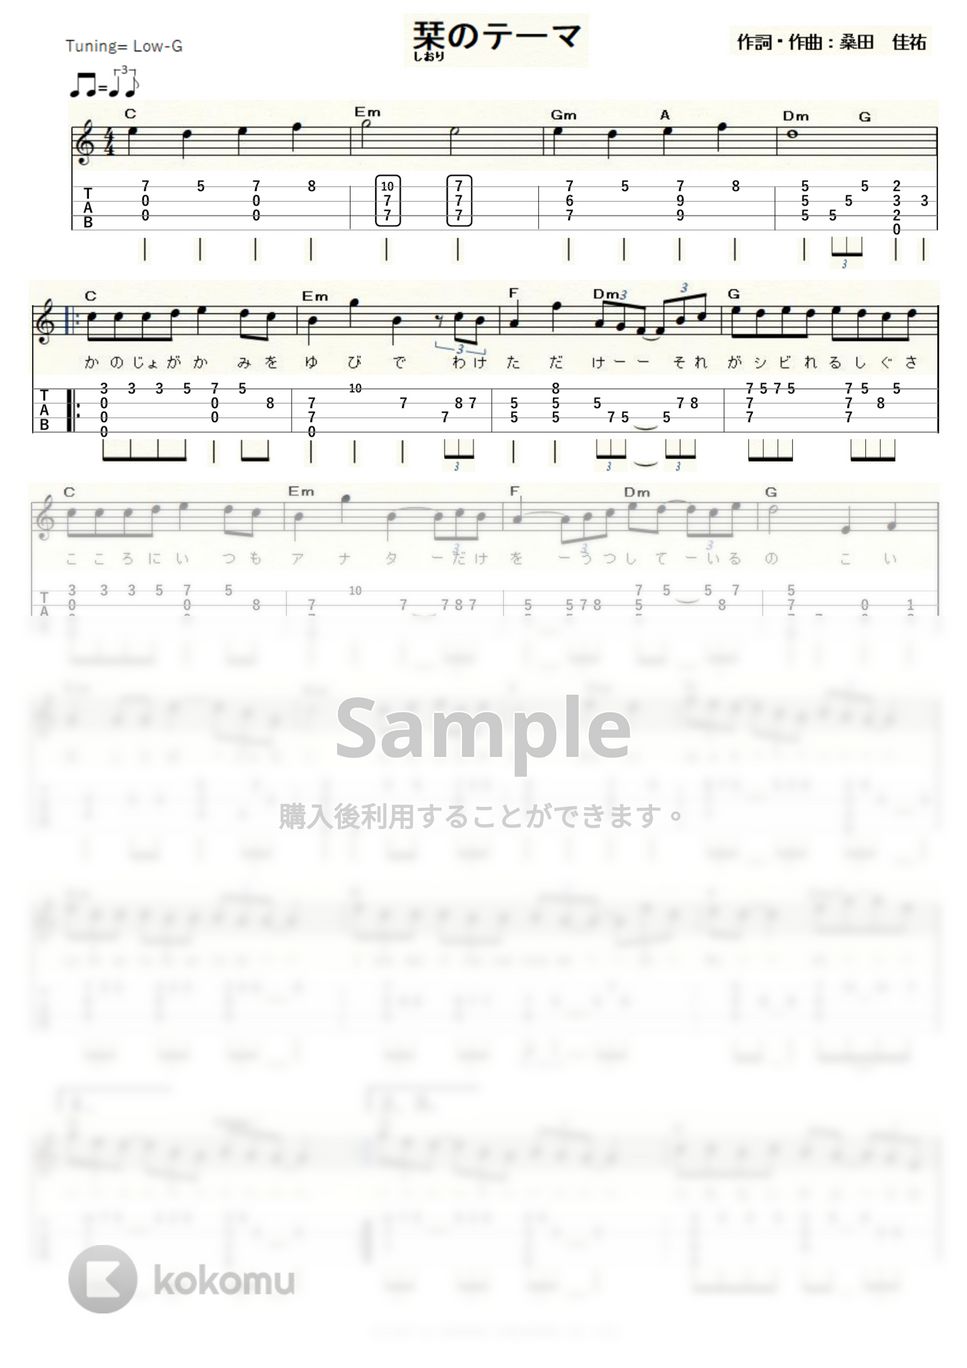 サザンオールスターズ - 栞（しおり）のテーマ (Low-G) by ukulelepapa